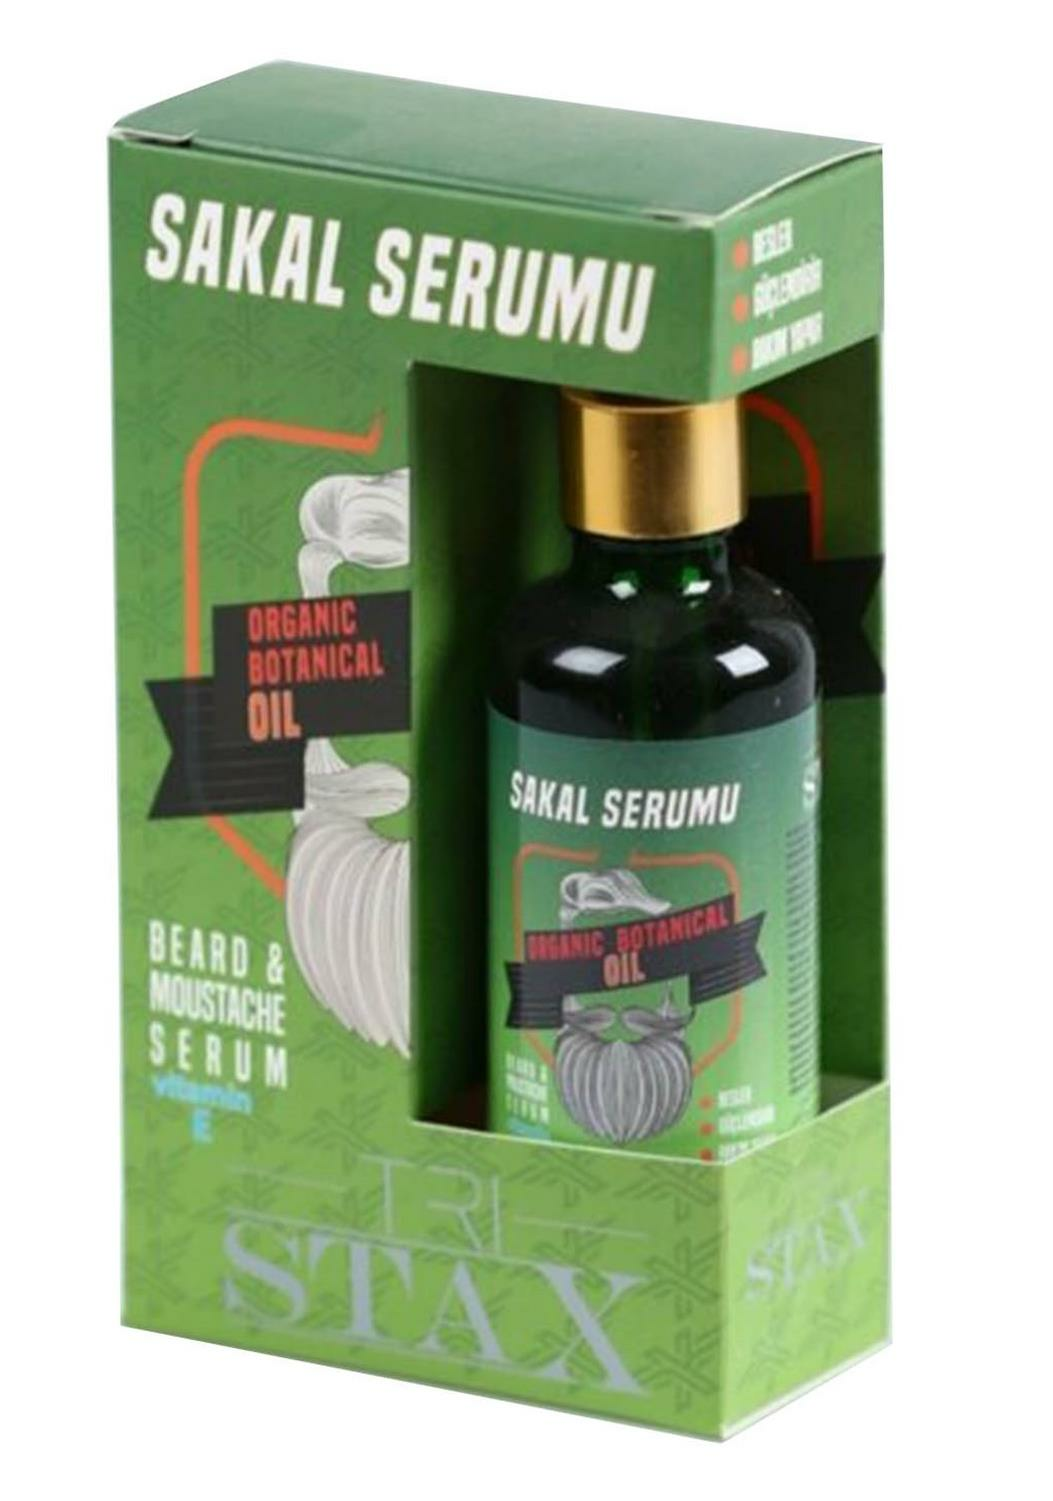 Stax Sakal Serumu 50 ml